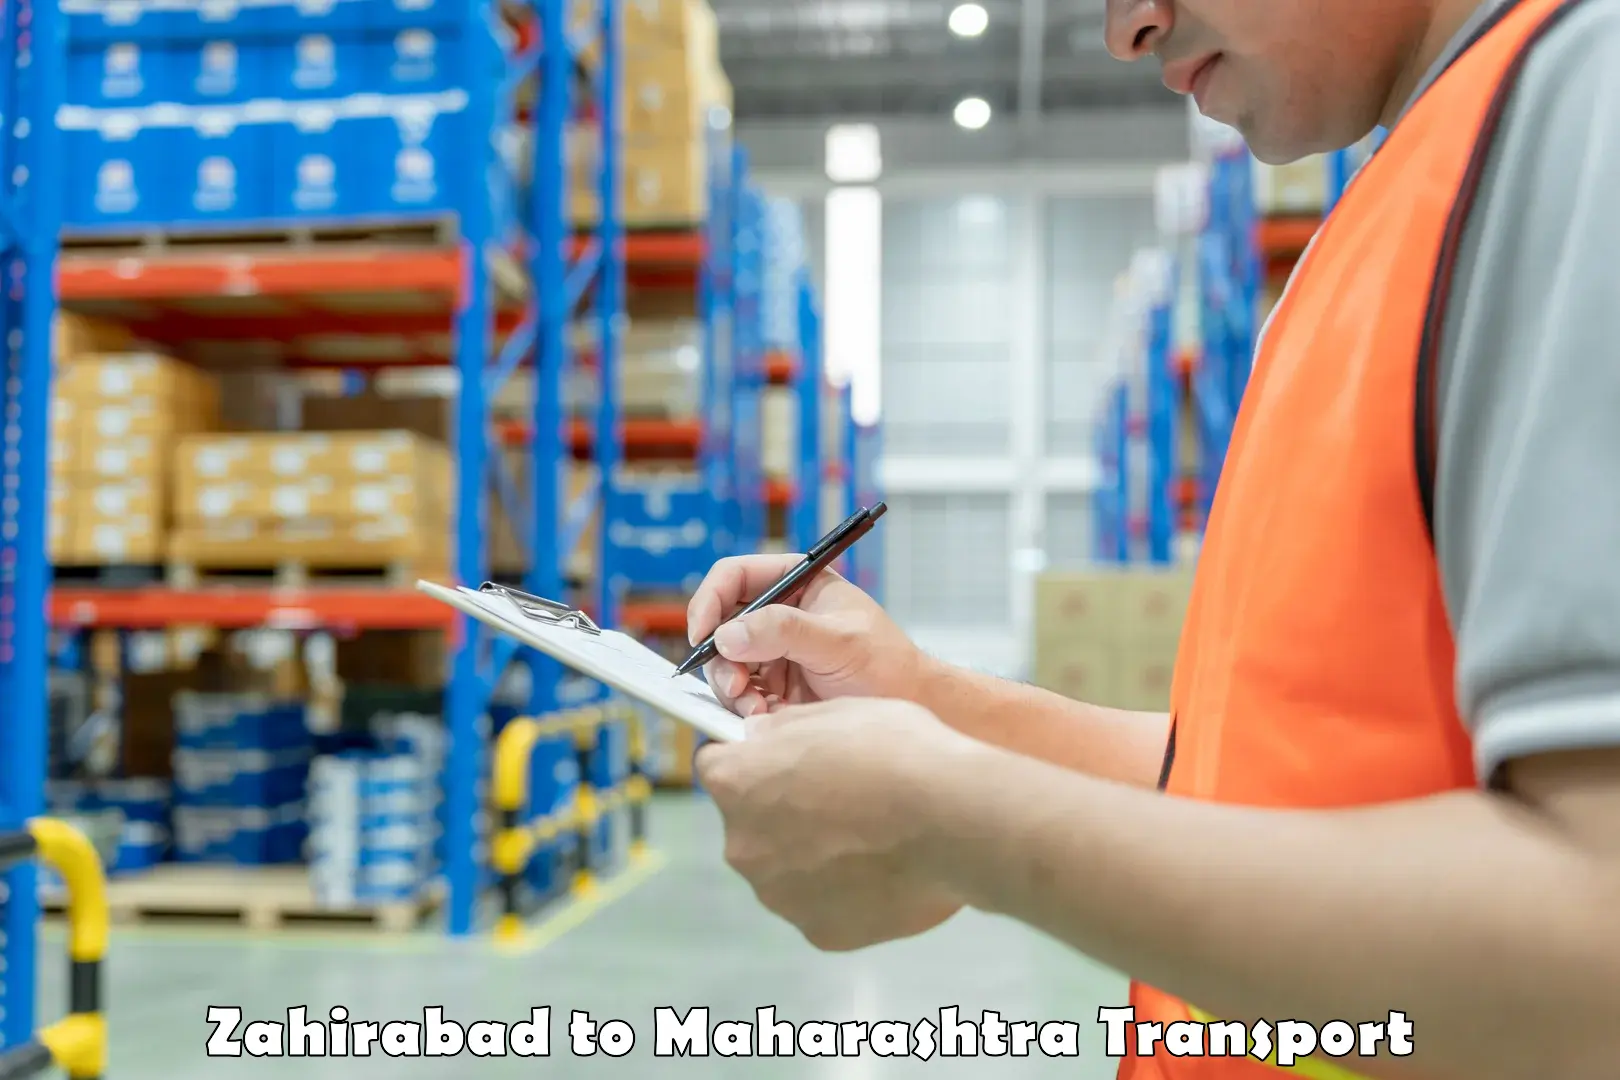 Truck transport companies in India Zahirabad to Vita